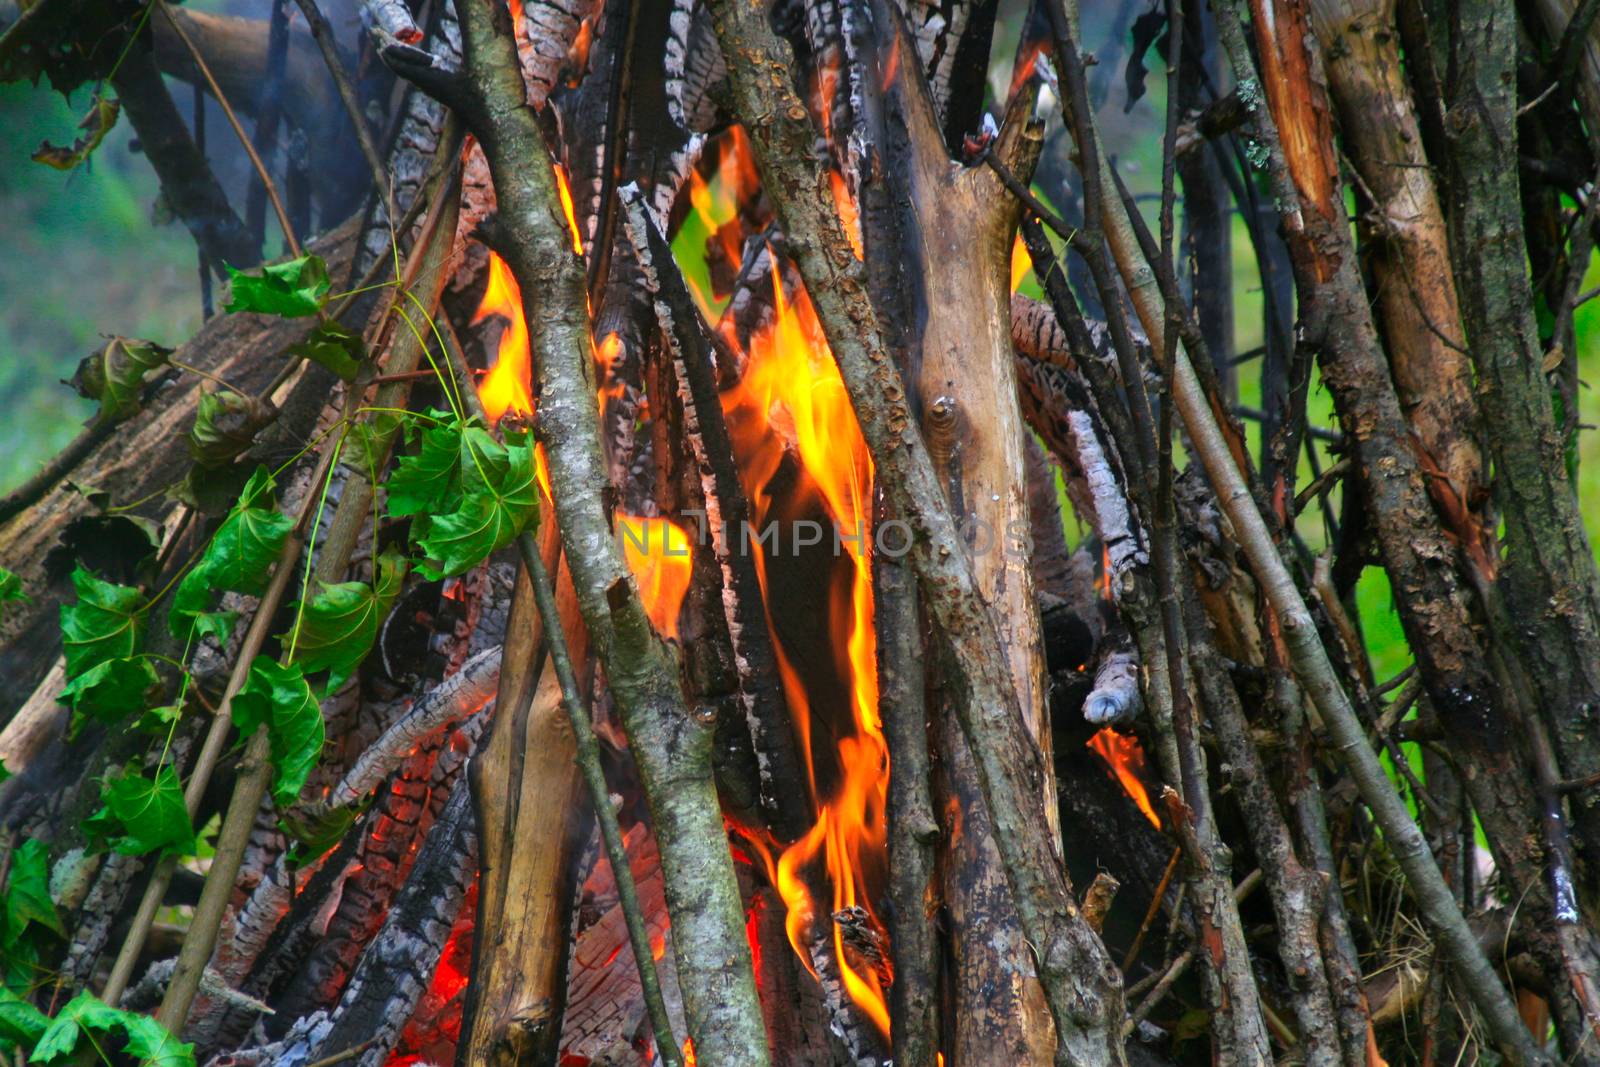 Inside the Bonfire by Valokuva24